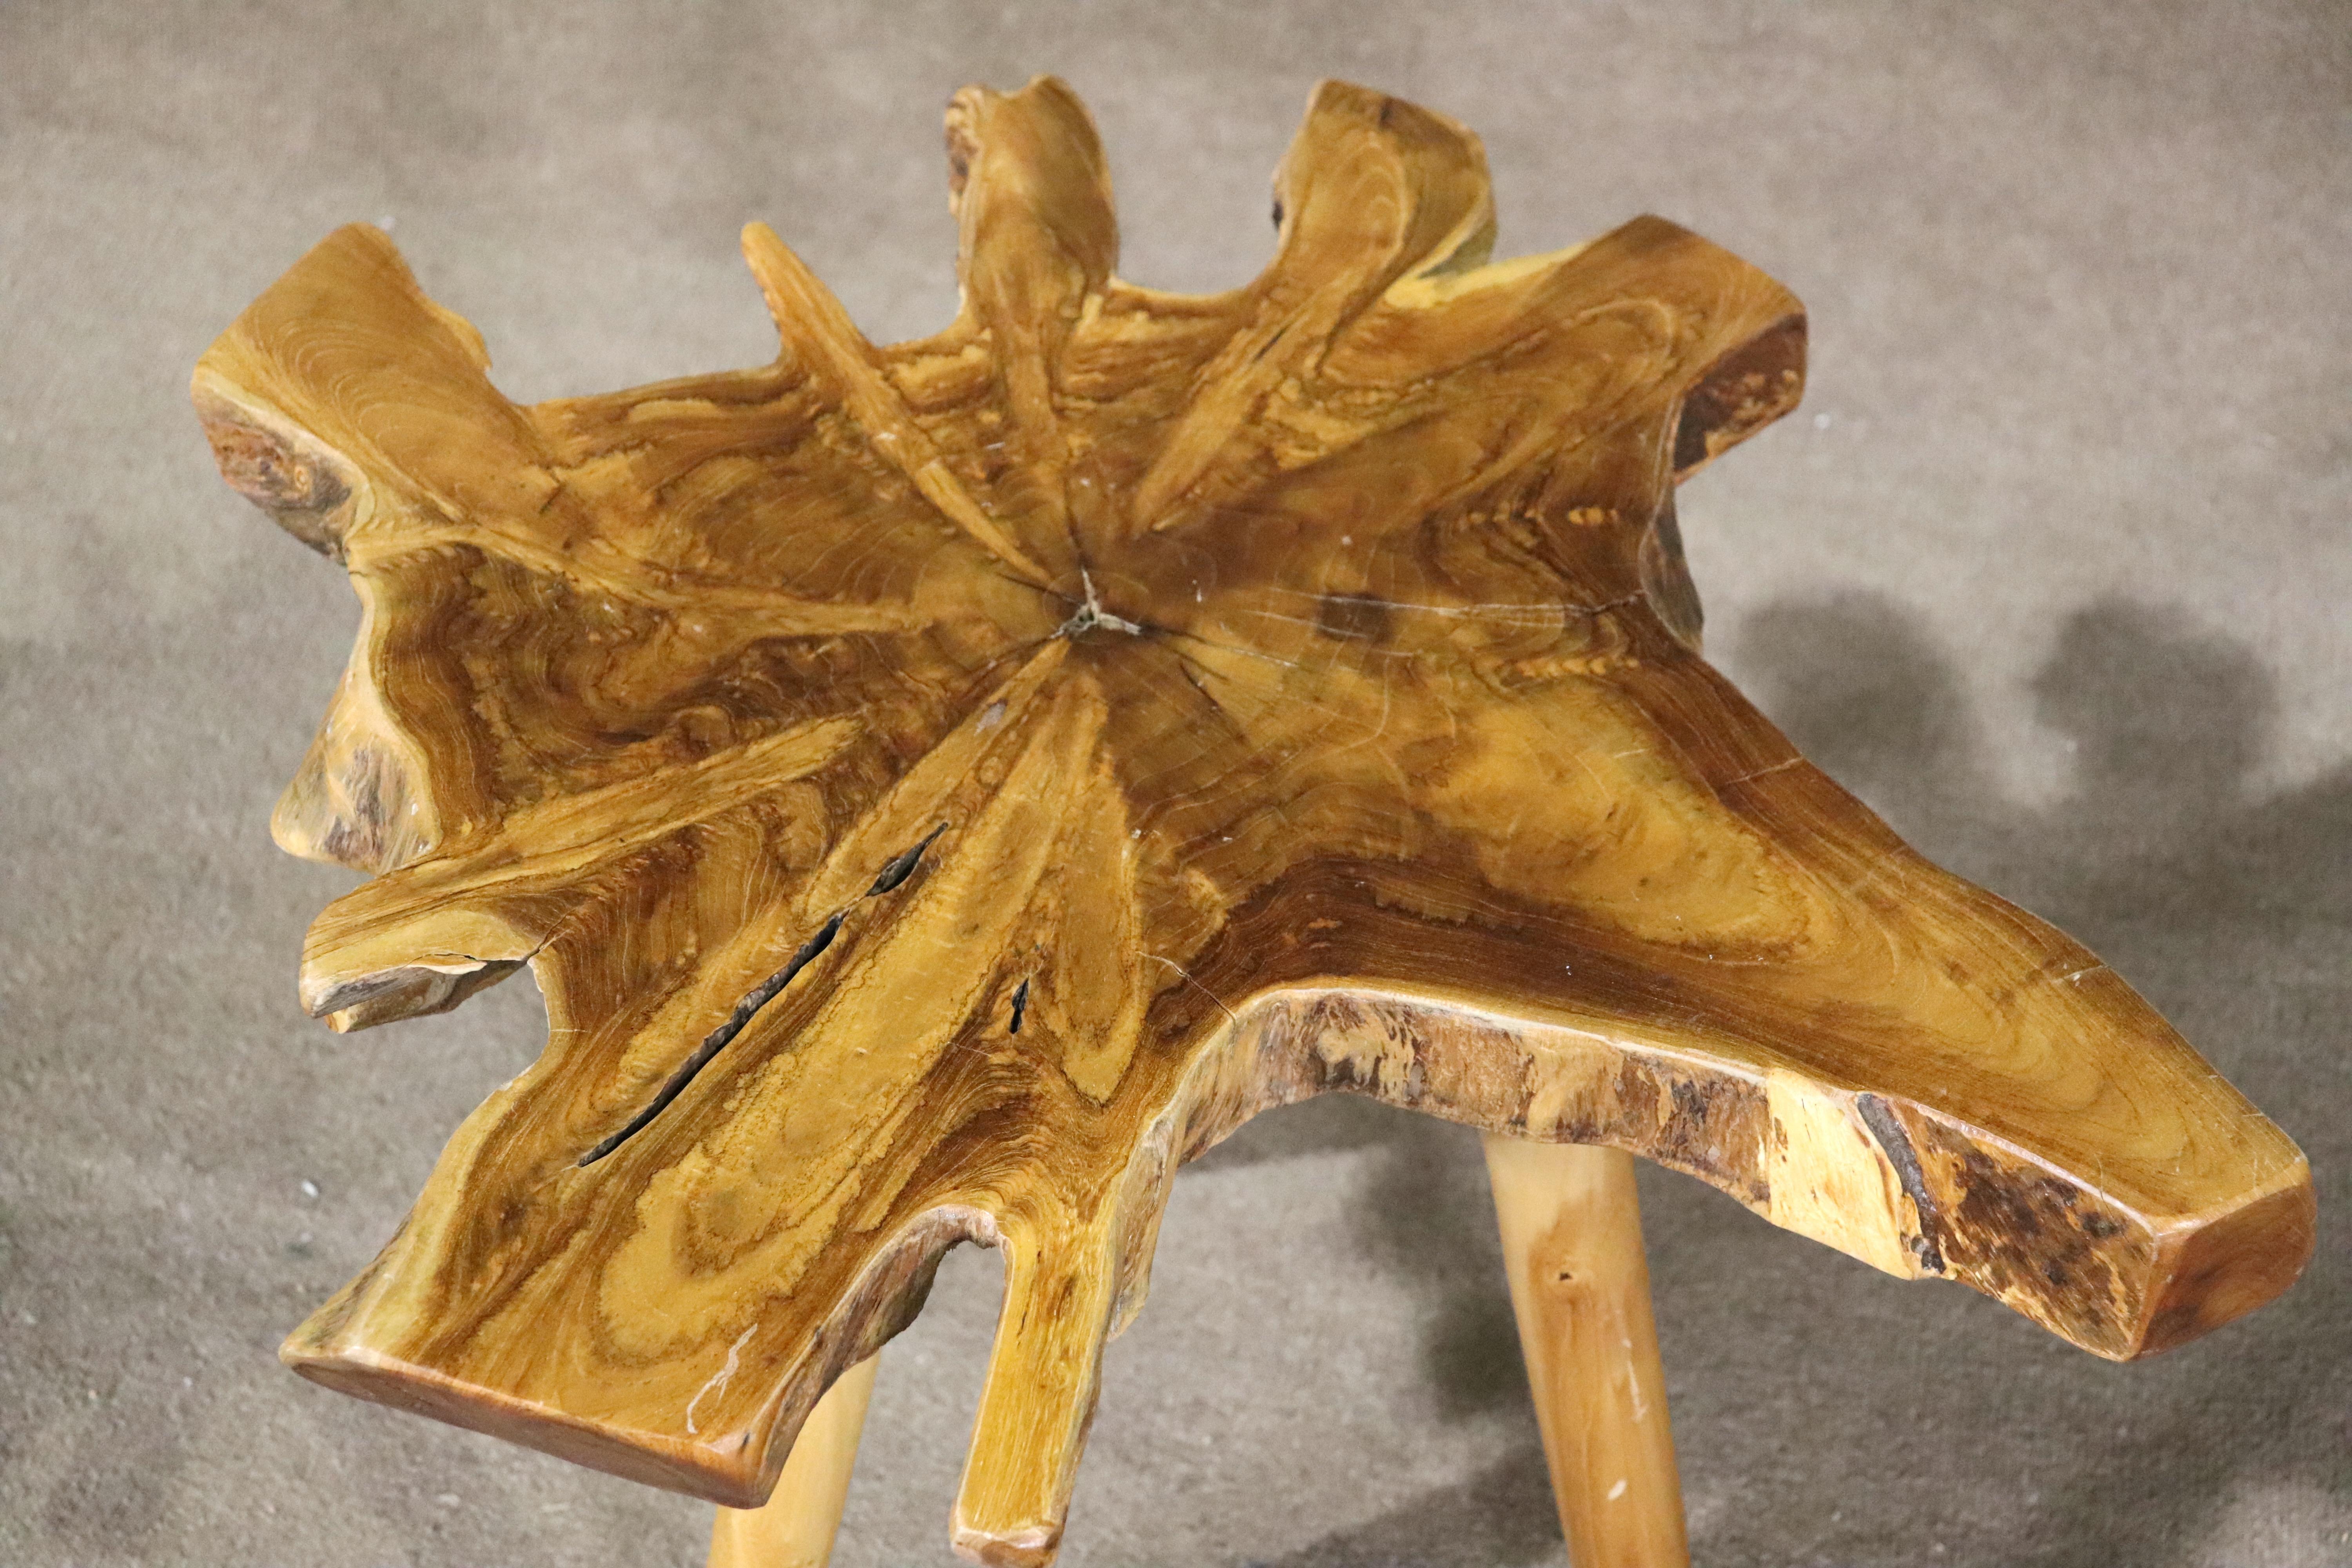 Dieser rustikale Tisch besteht aus einer einzigartigen Platte aus wiederverwertetem Holz mit einer wunderschönen lebendigen Kante, die auf drei konischen Holzbeinen steht.
Bitte bestätigen Sie den Standort NY oder NJ